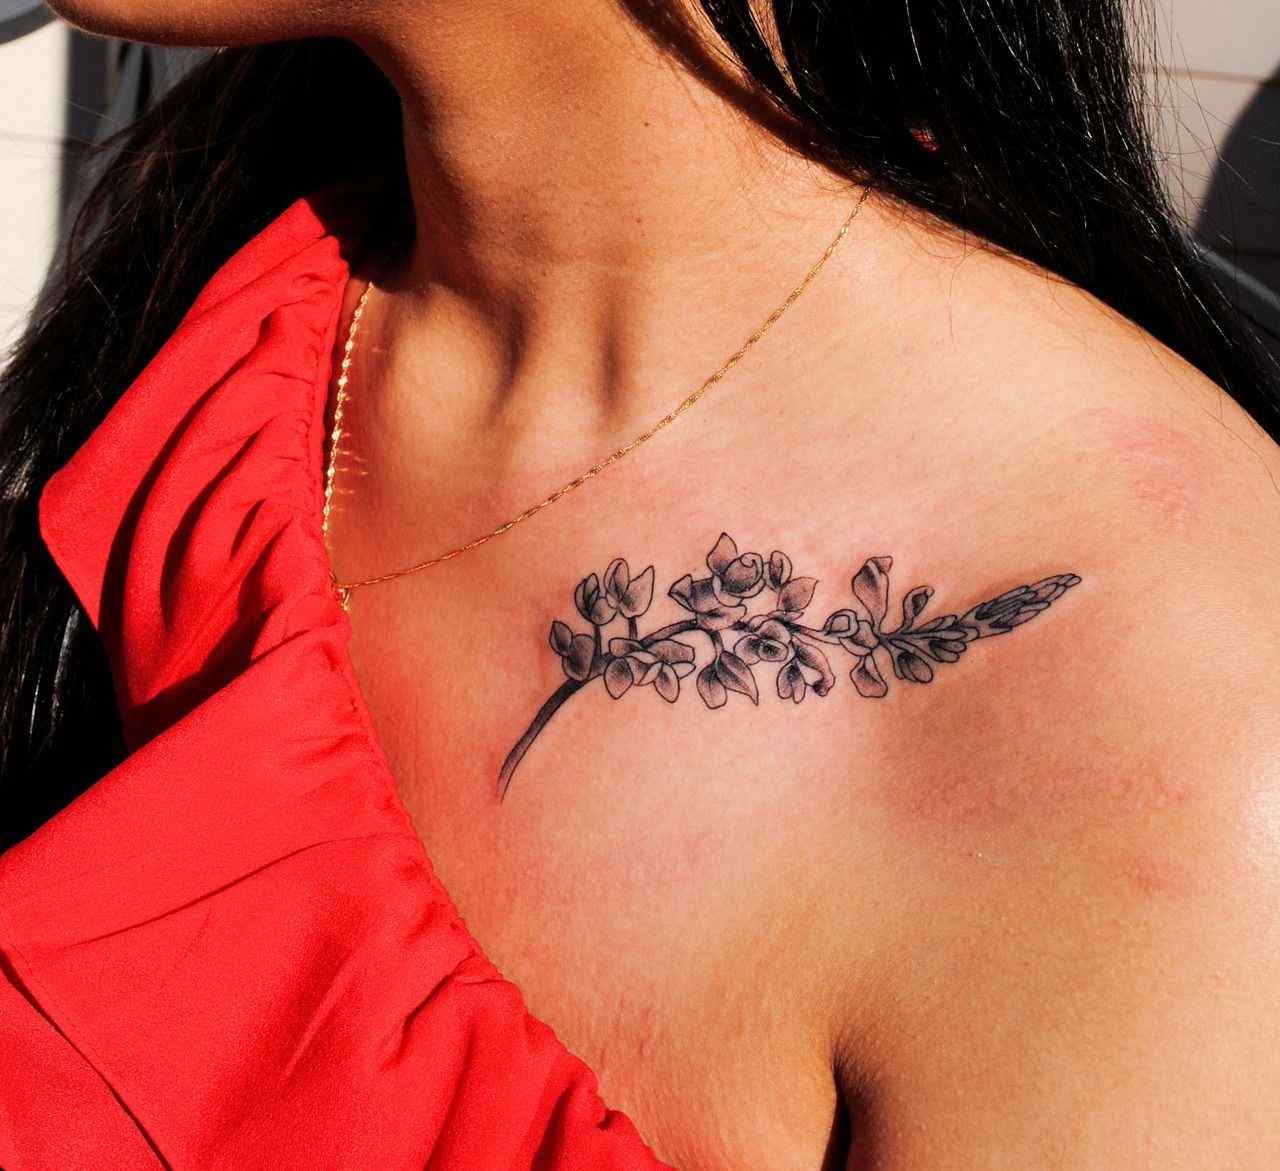 Flower tattoo meaning tattoo key small women tattoo design ideas